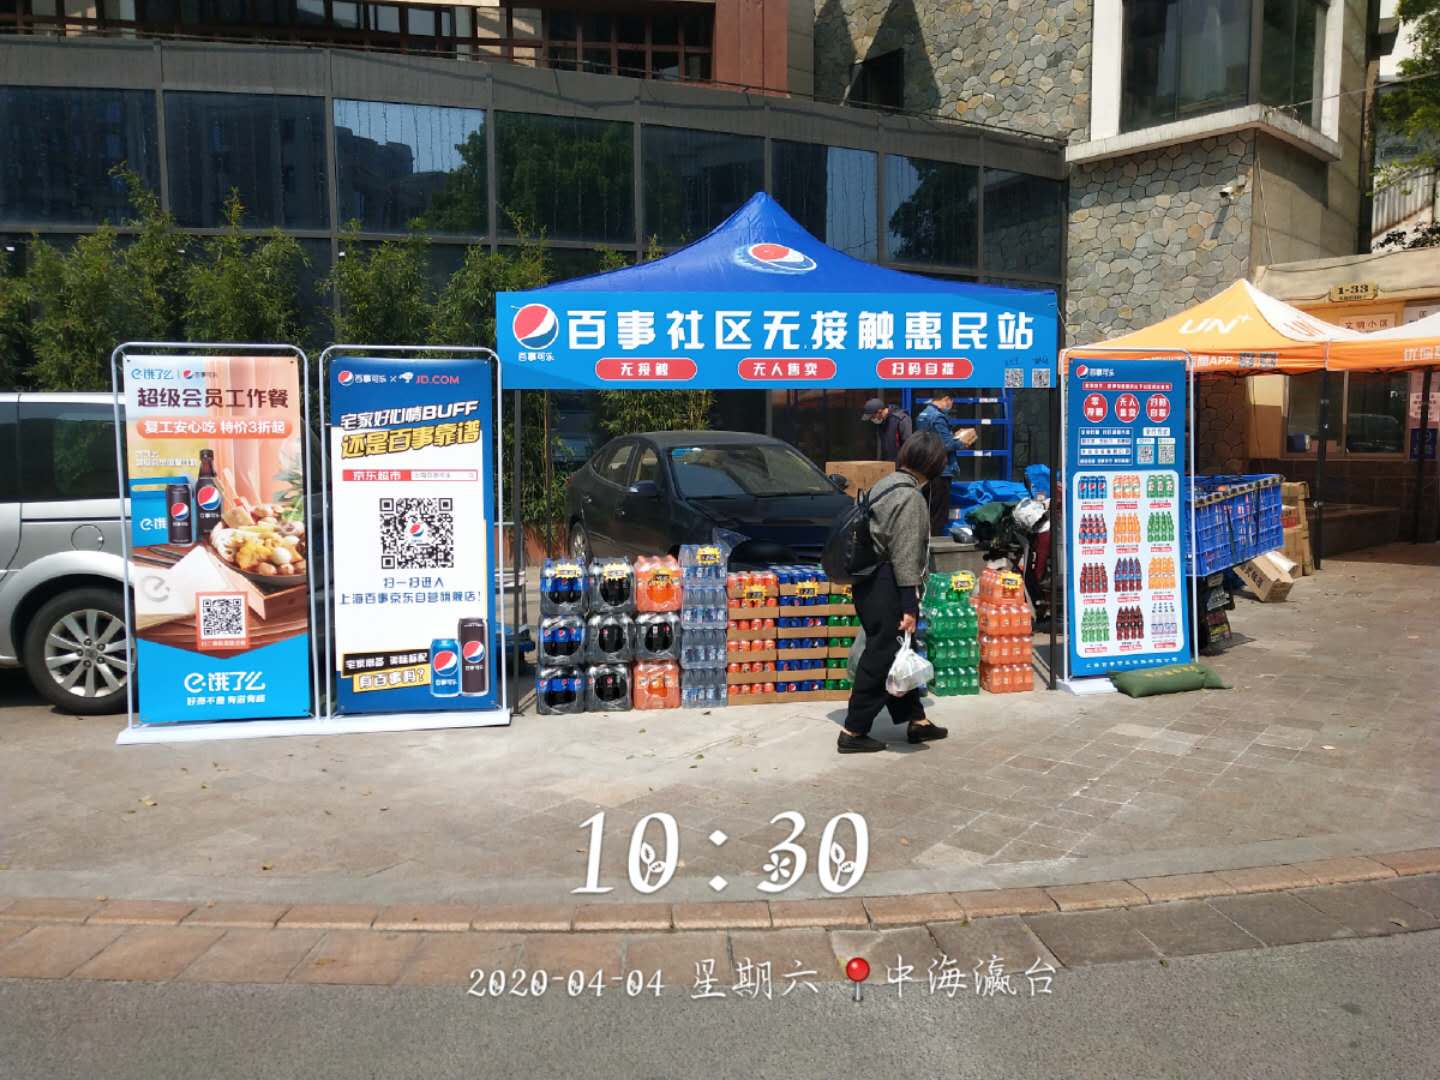 百事可乐无人售货快闪活动-上海中海瀛台